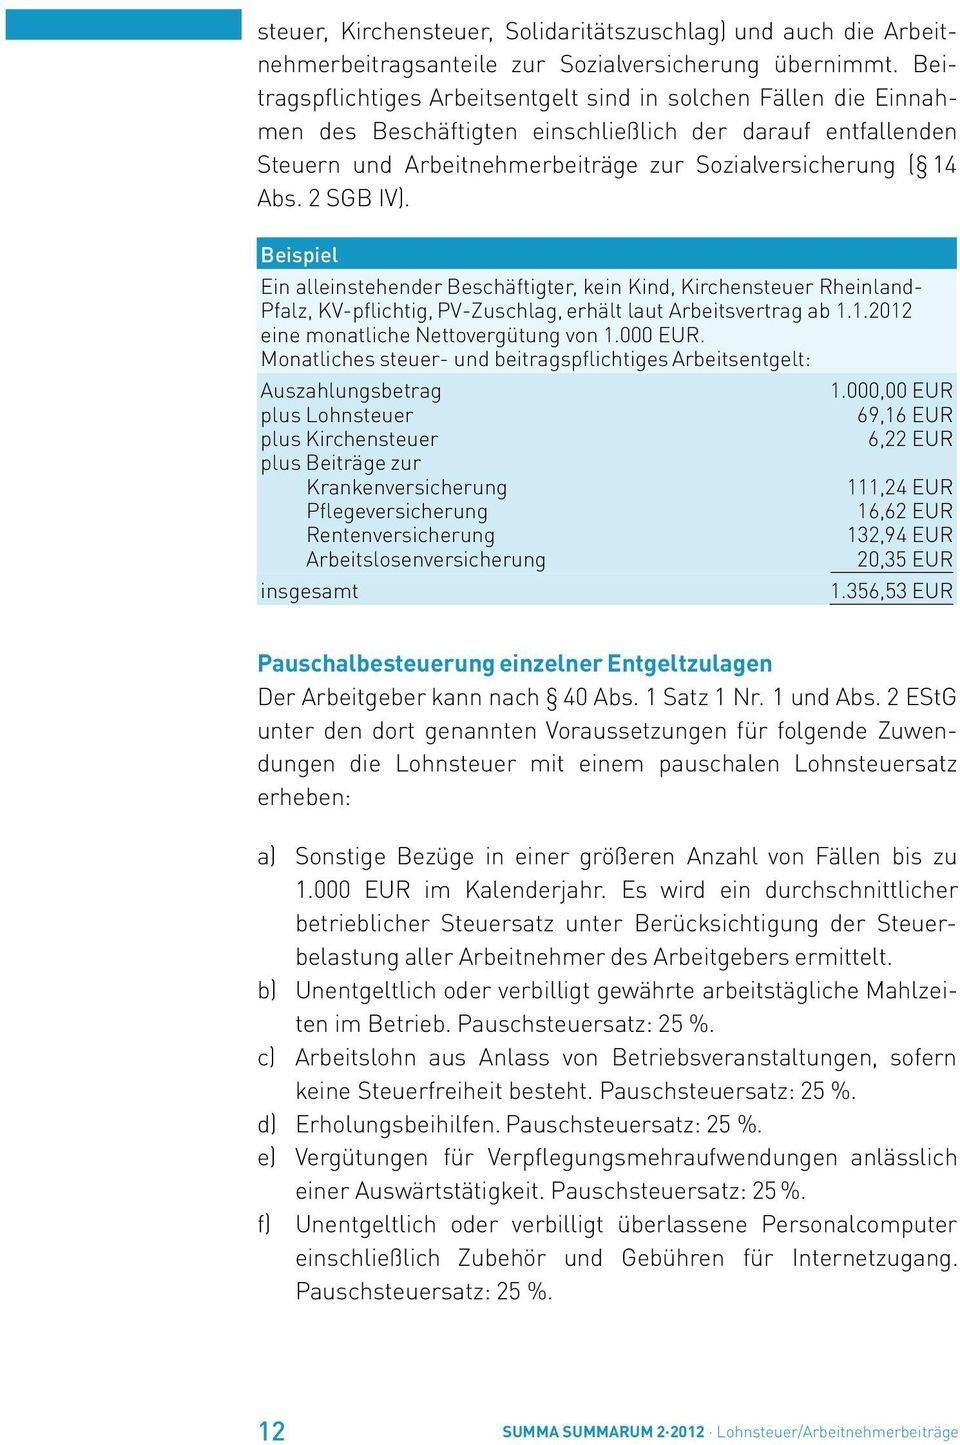 2 SGB IV). Beispiel Ein alleinstehender Beschäftigter, kein Kind, Kirchensteuer Rheinland- Pfalz, KV-pflichtig, PV-Zuschlag, erhält laut Arbeitsvertrag ab 1.1.2012 eine monatliche Nettovergütung von 1.